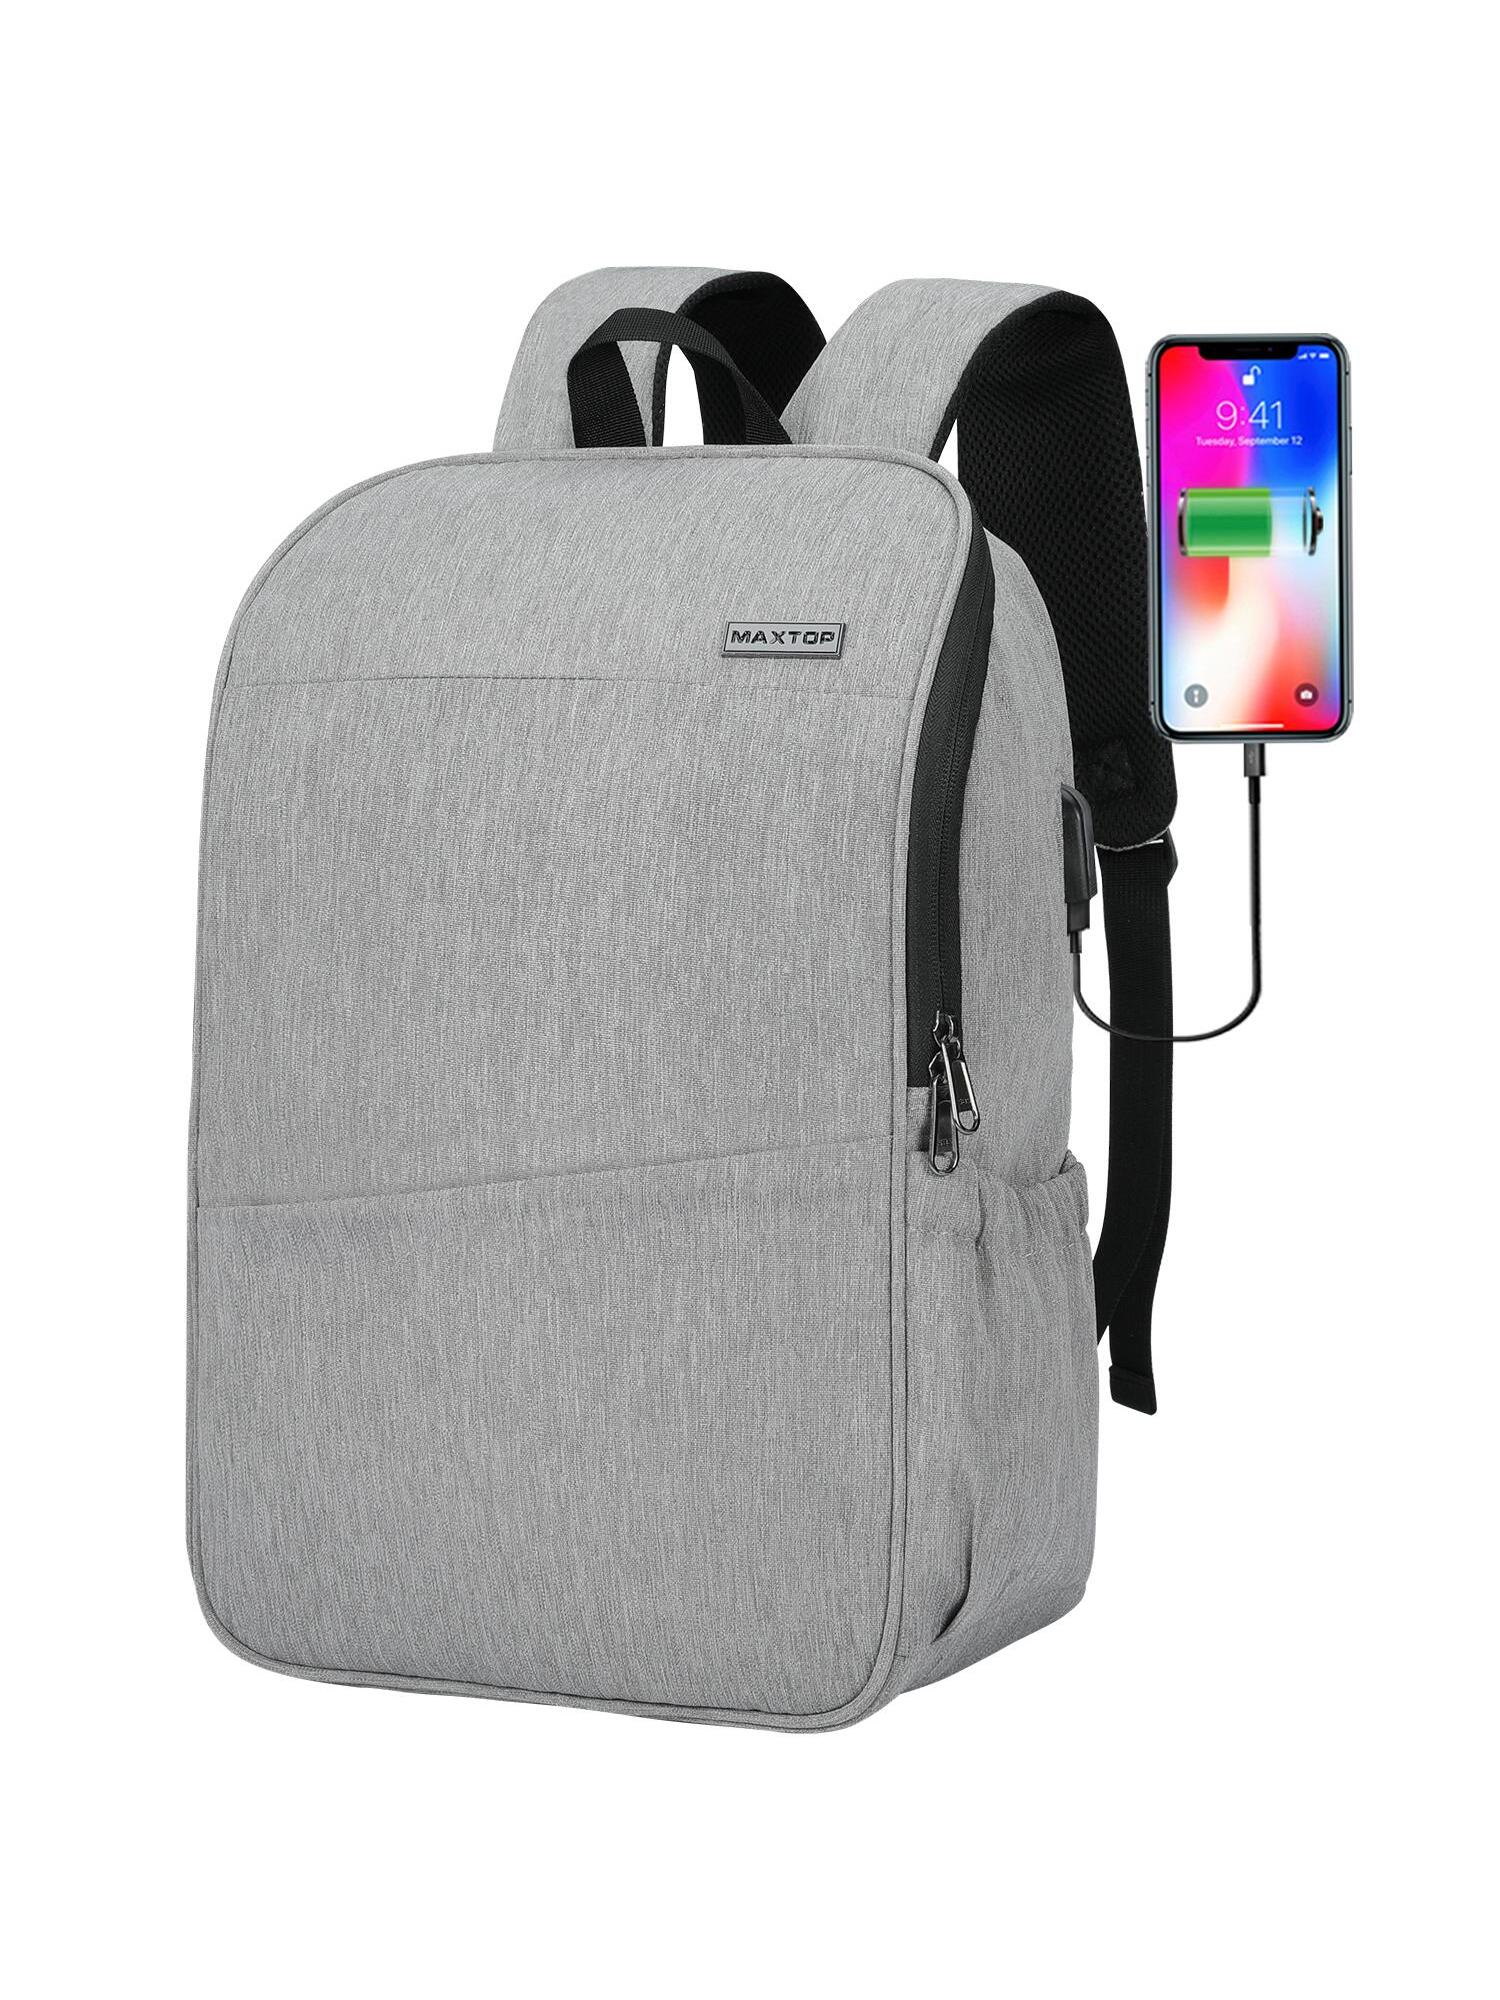 Рюкзак для ноутбука MAXTOP с глубоким хранилищем и USB-портом для зарядки Сумка для студенческого компьютера Подходит для 16-дюймового ноутбука, светло-серый рюкзак мужской для ноутбука 15 6 дюйма с usb портом